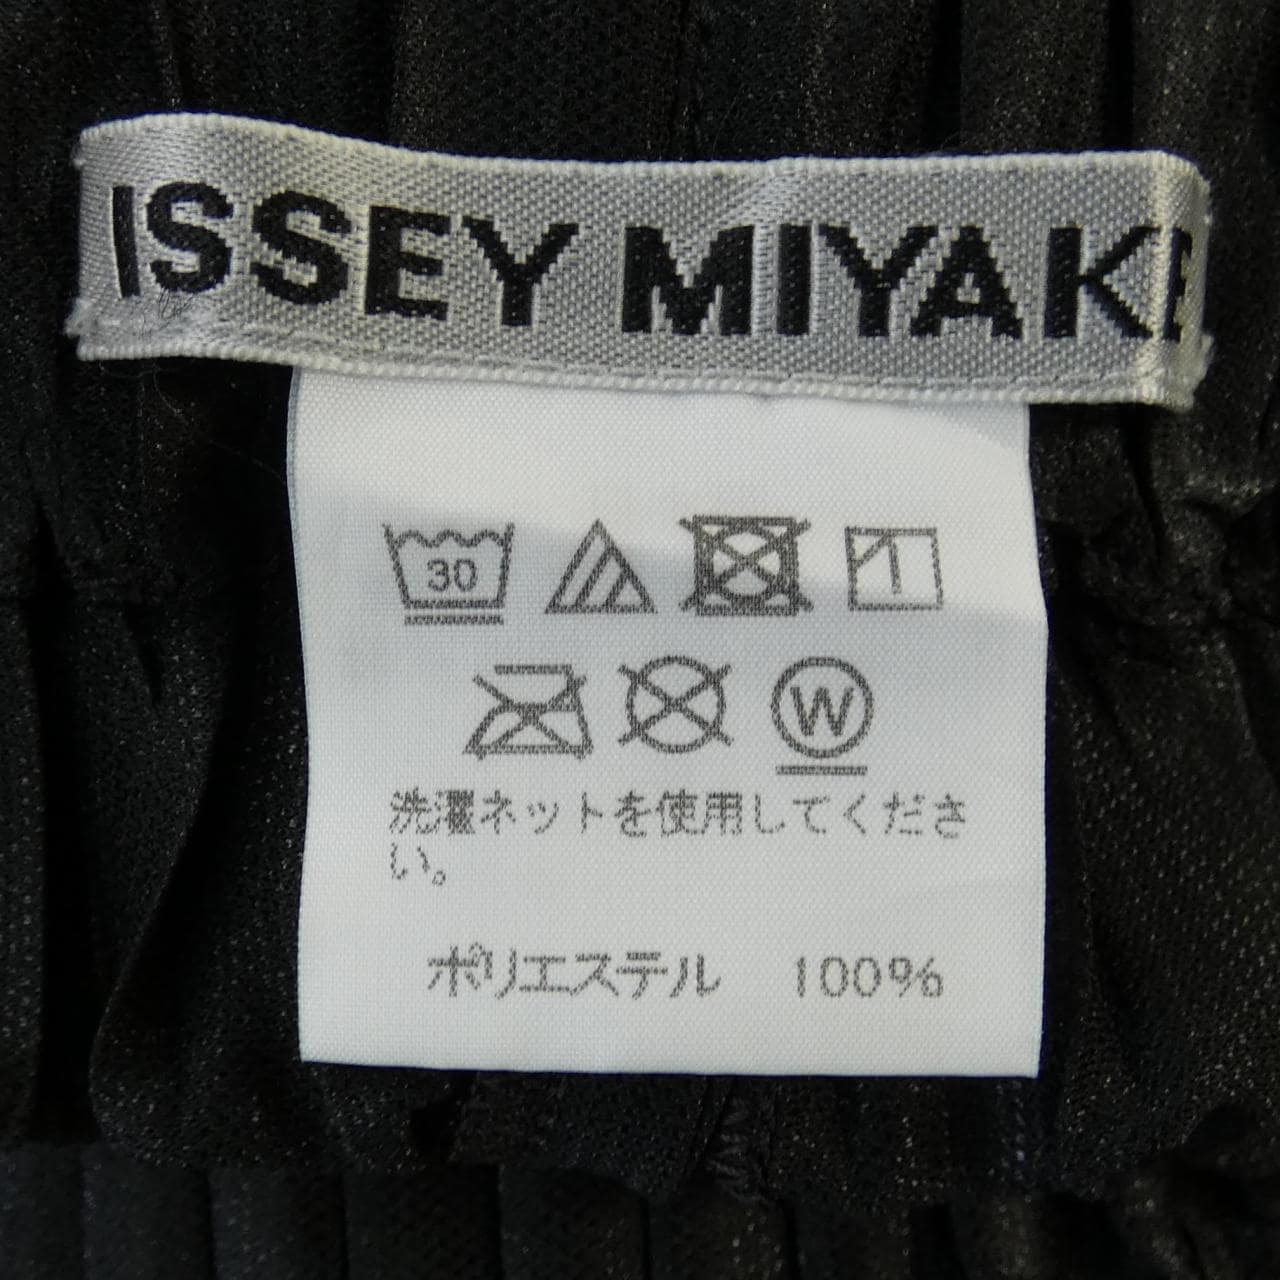 イッセイミヤケ ISSEY MIYAKE パンツ